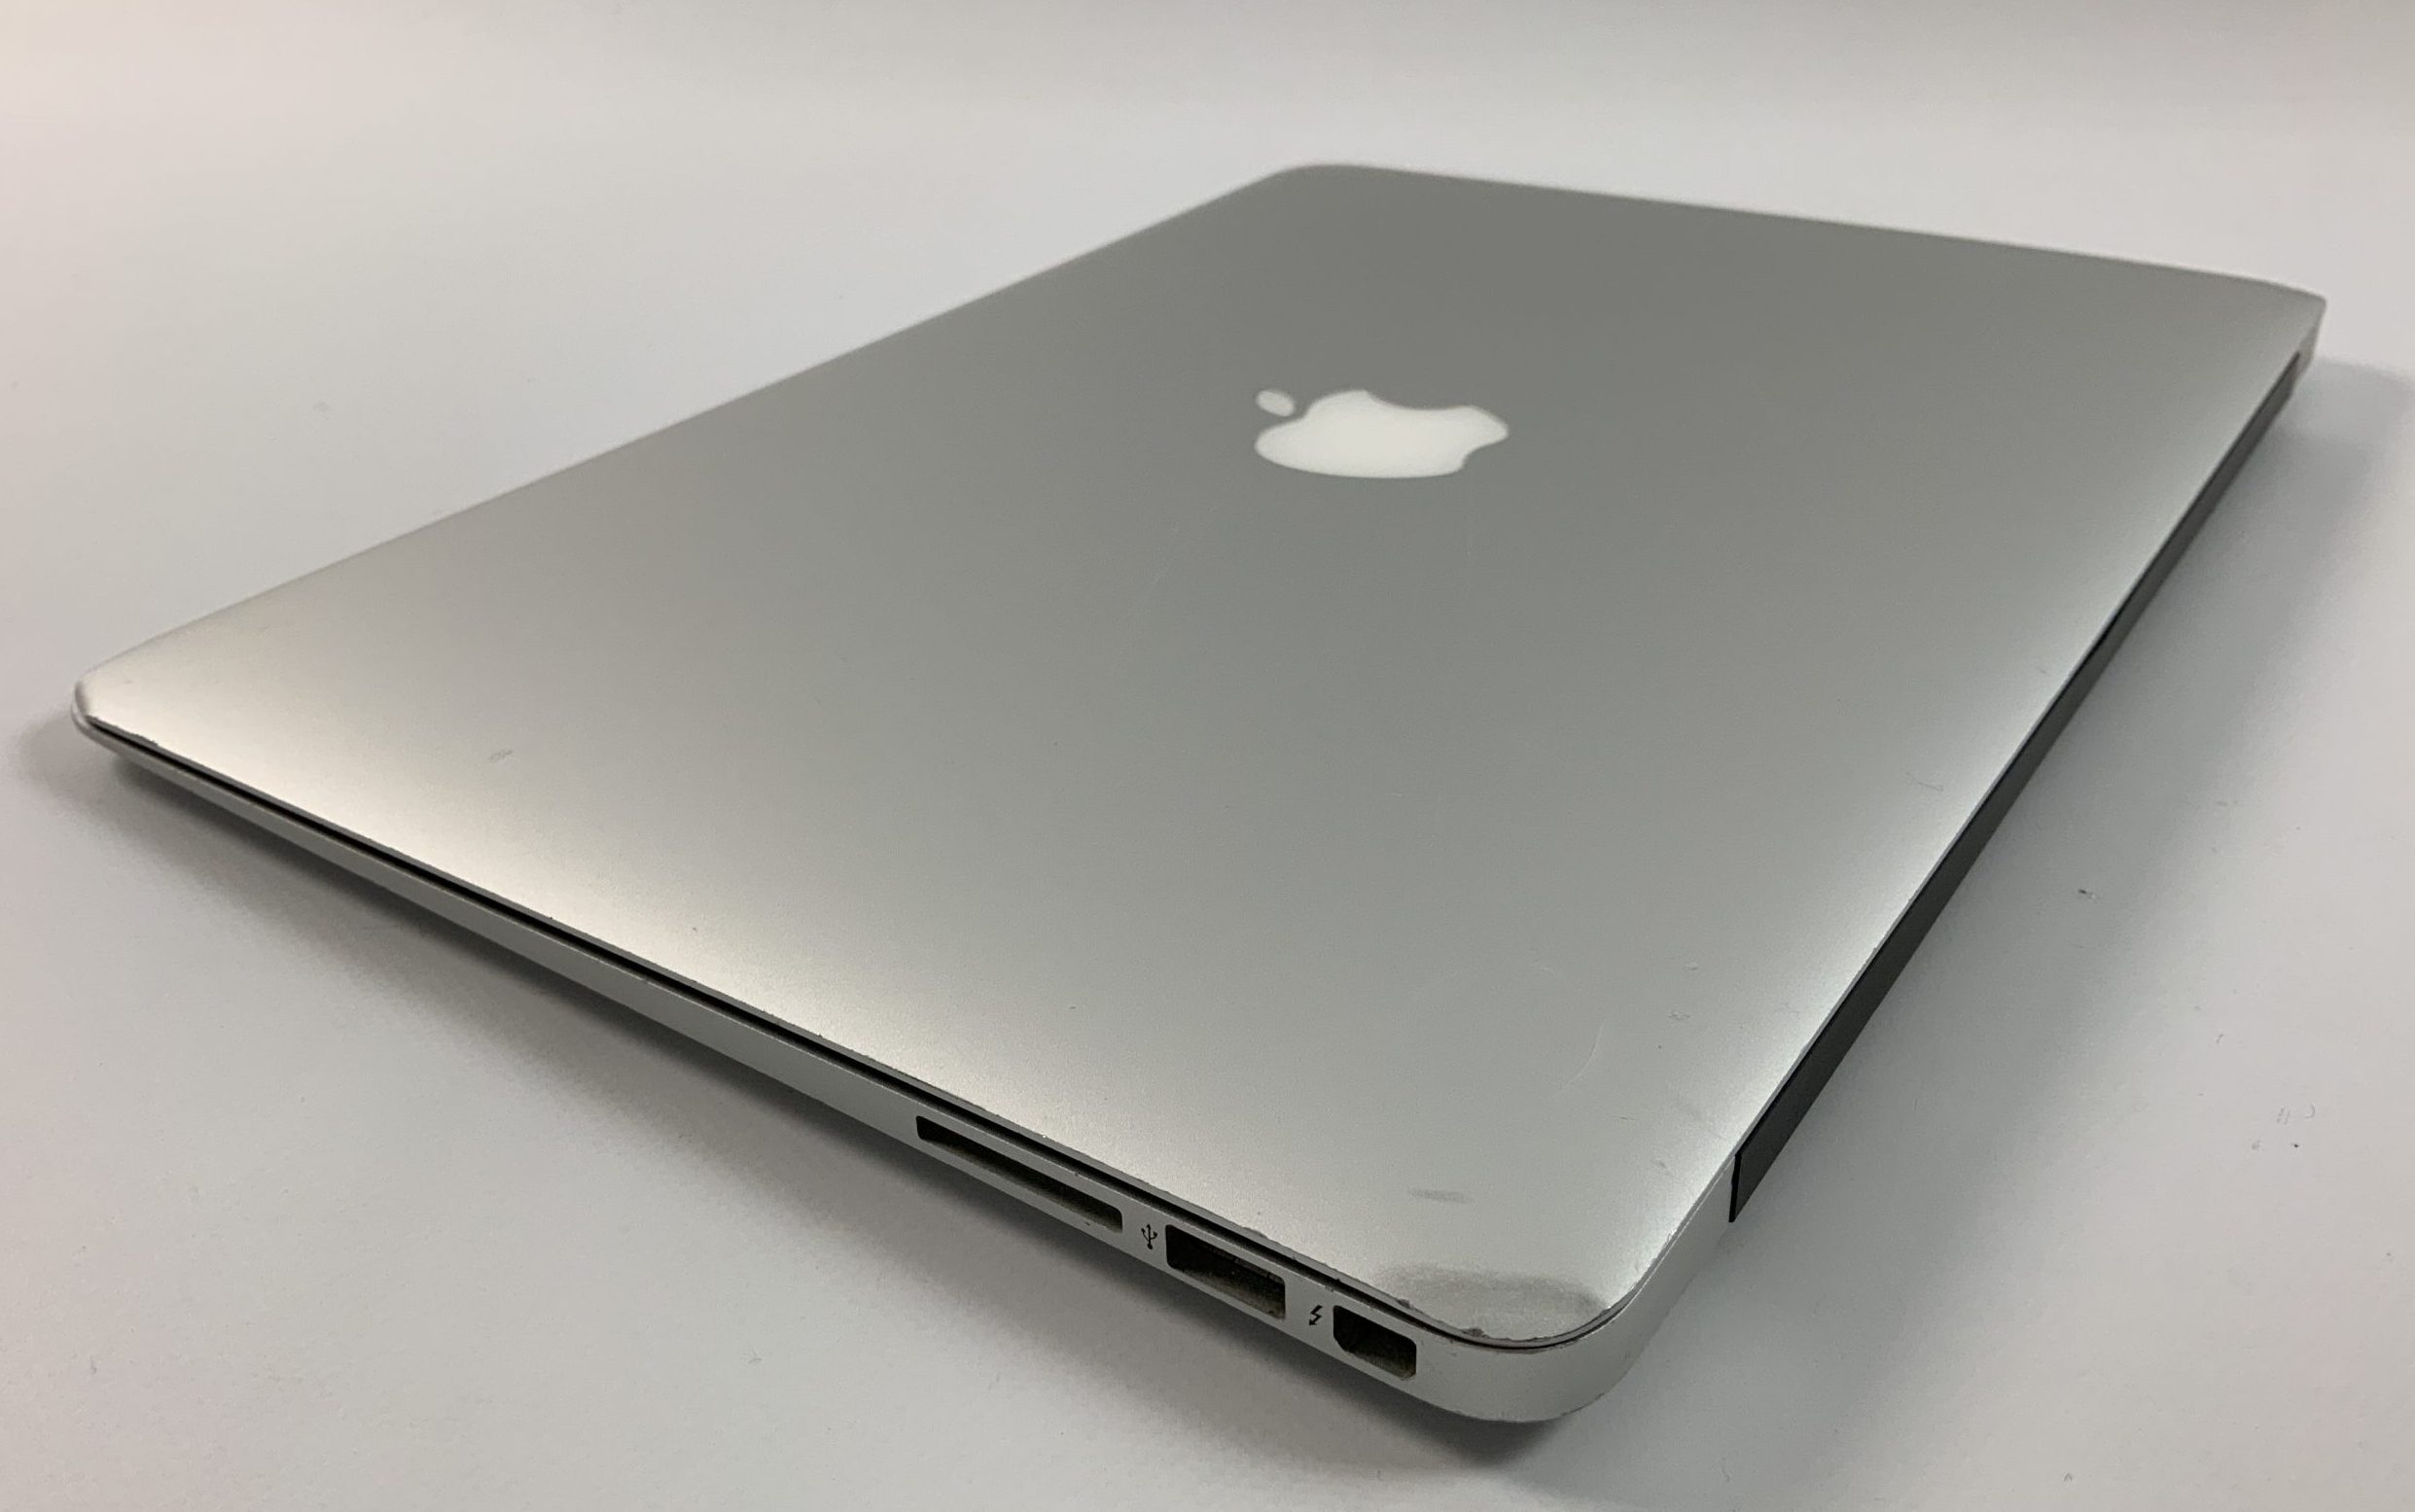 MacBook Air 13" Mid 2017 (Intel Core i5 1.8 GHz 8 GB RAM 256 GB SSD), Intel Core i5 1.8 GHz, 8 GB RAM, 256 GB SSD, Bild 4